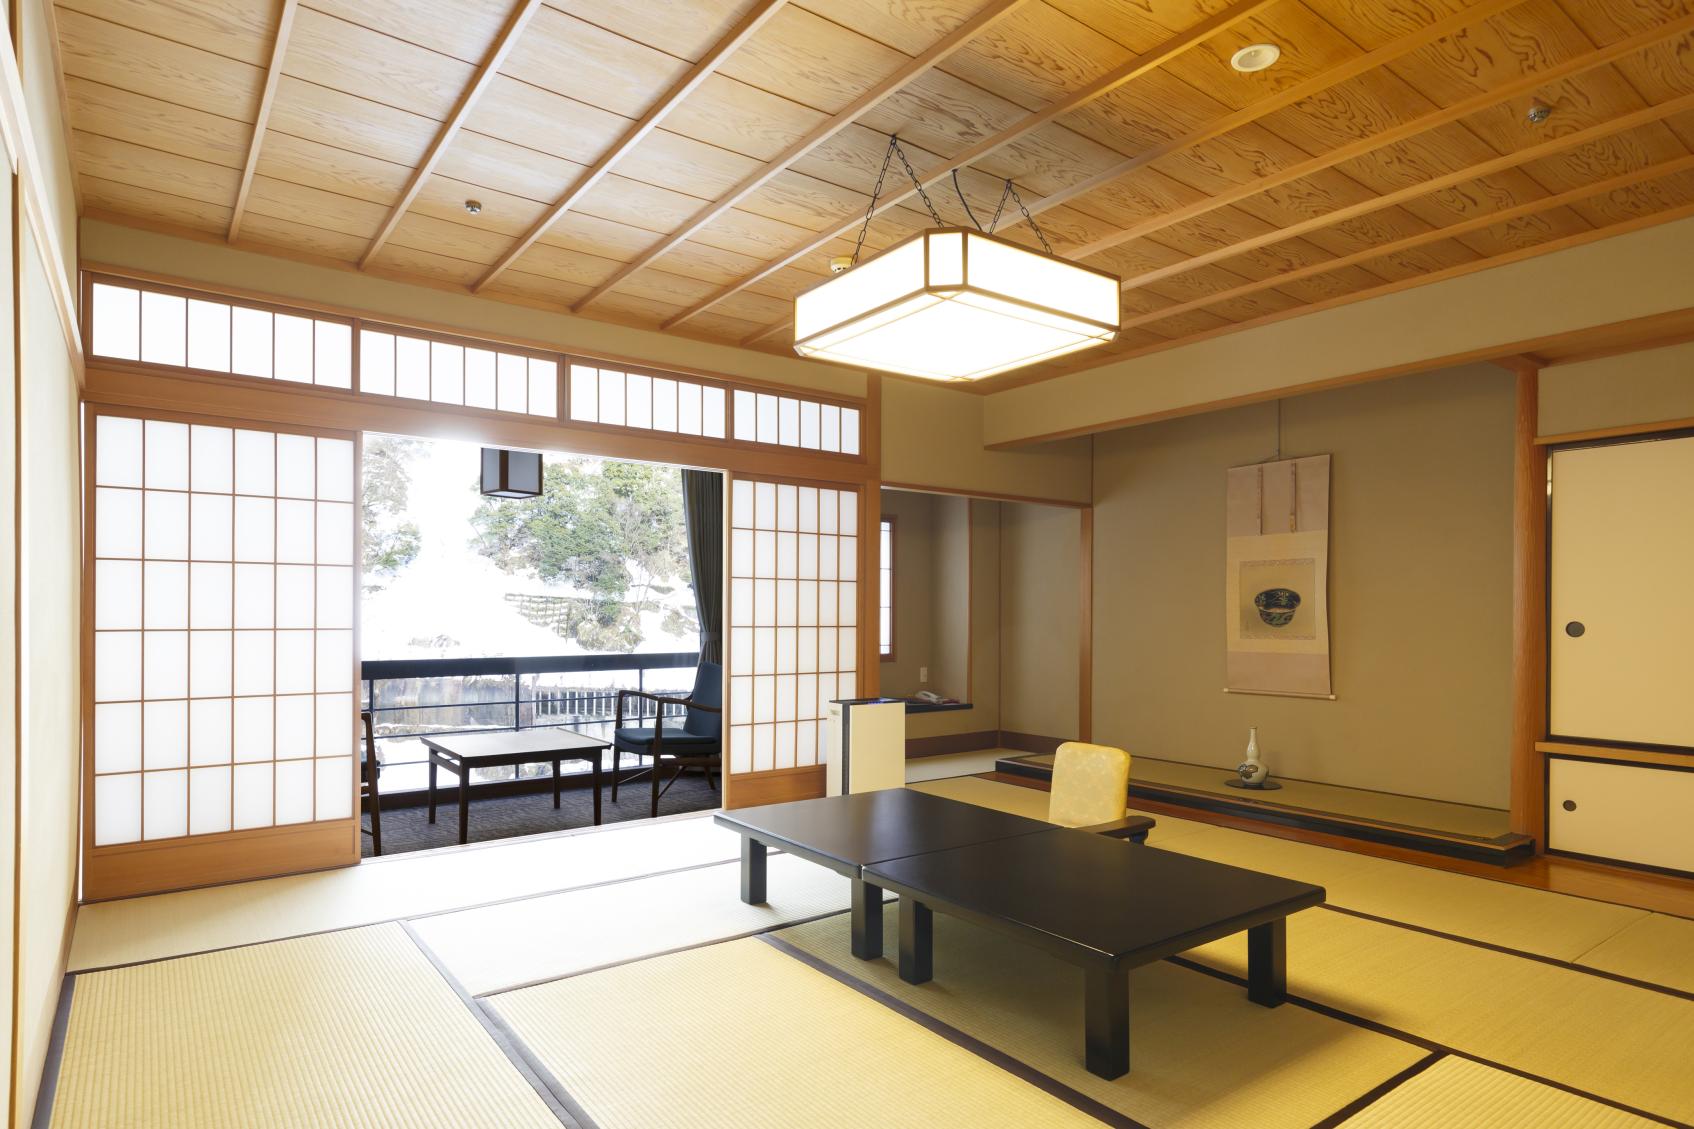 旅館は日本文化が凝縮された空間-1